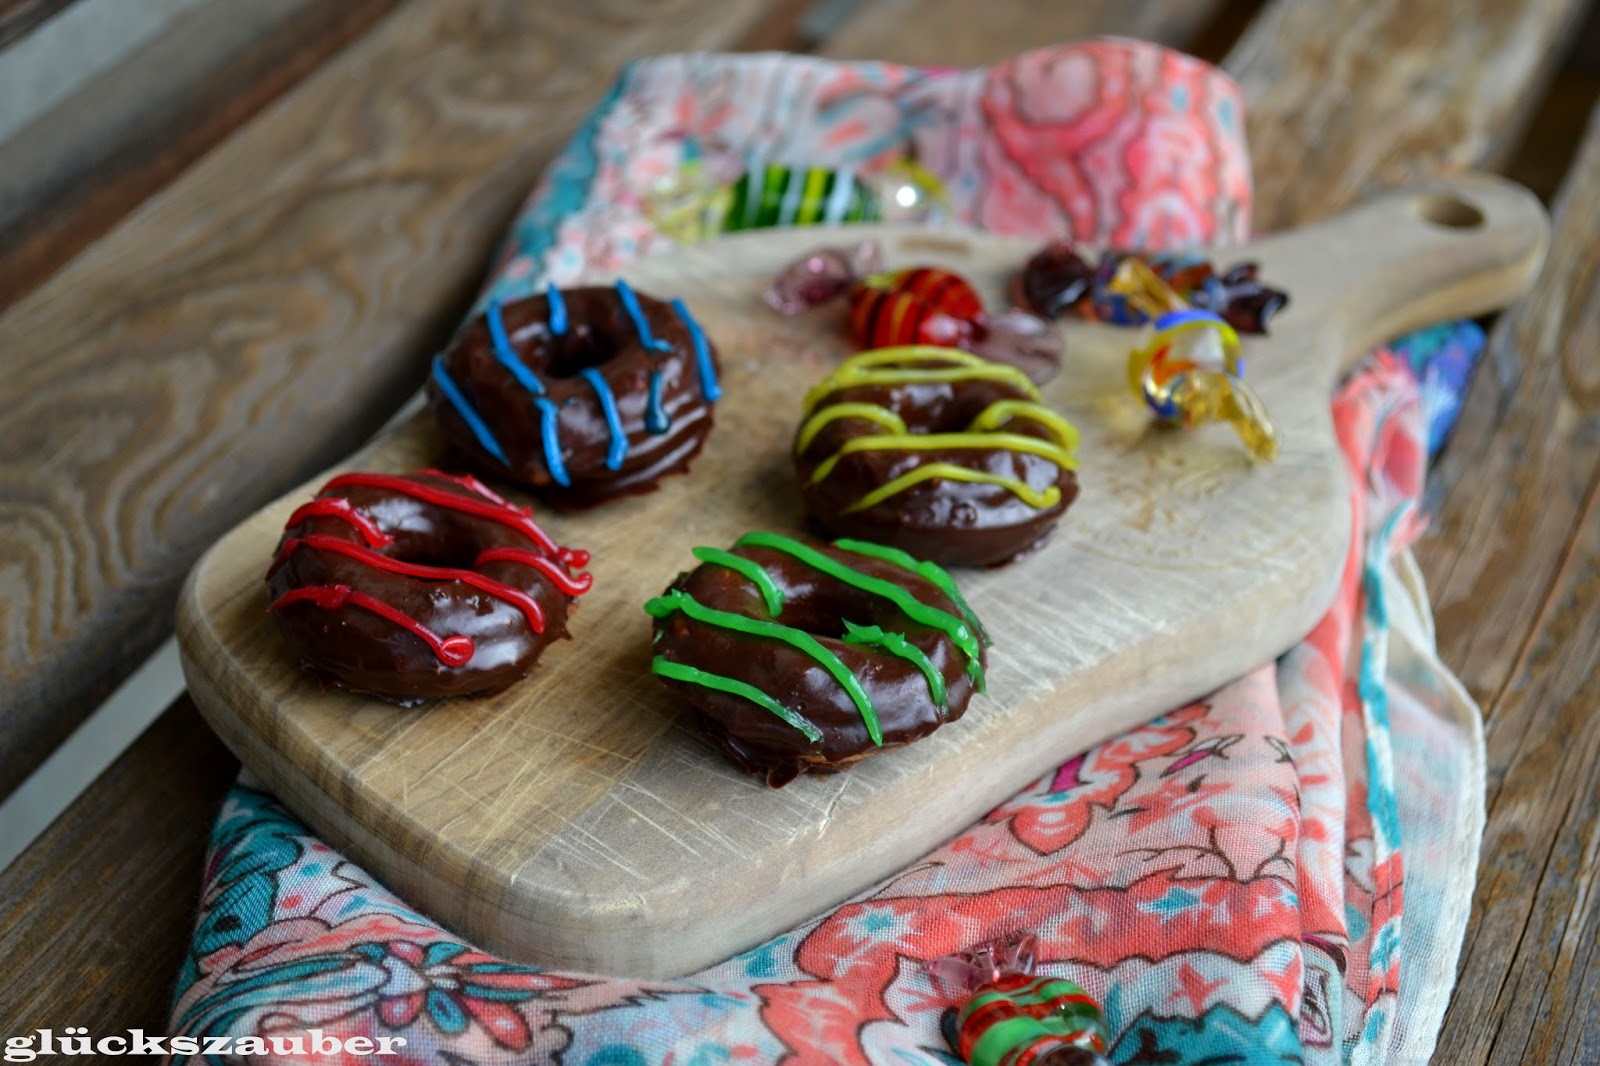 glückszauber : Mini-Schoko-Donuts mit bunten Streifen